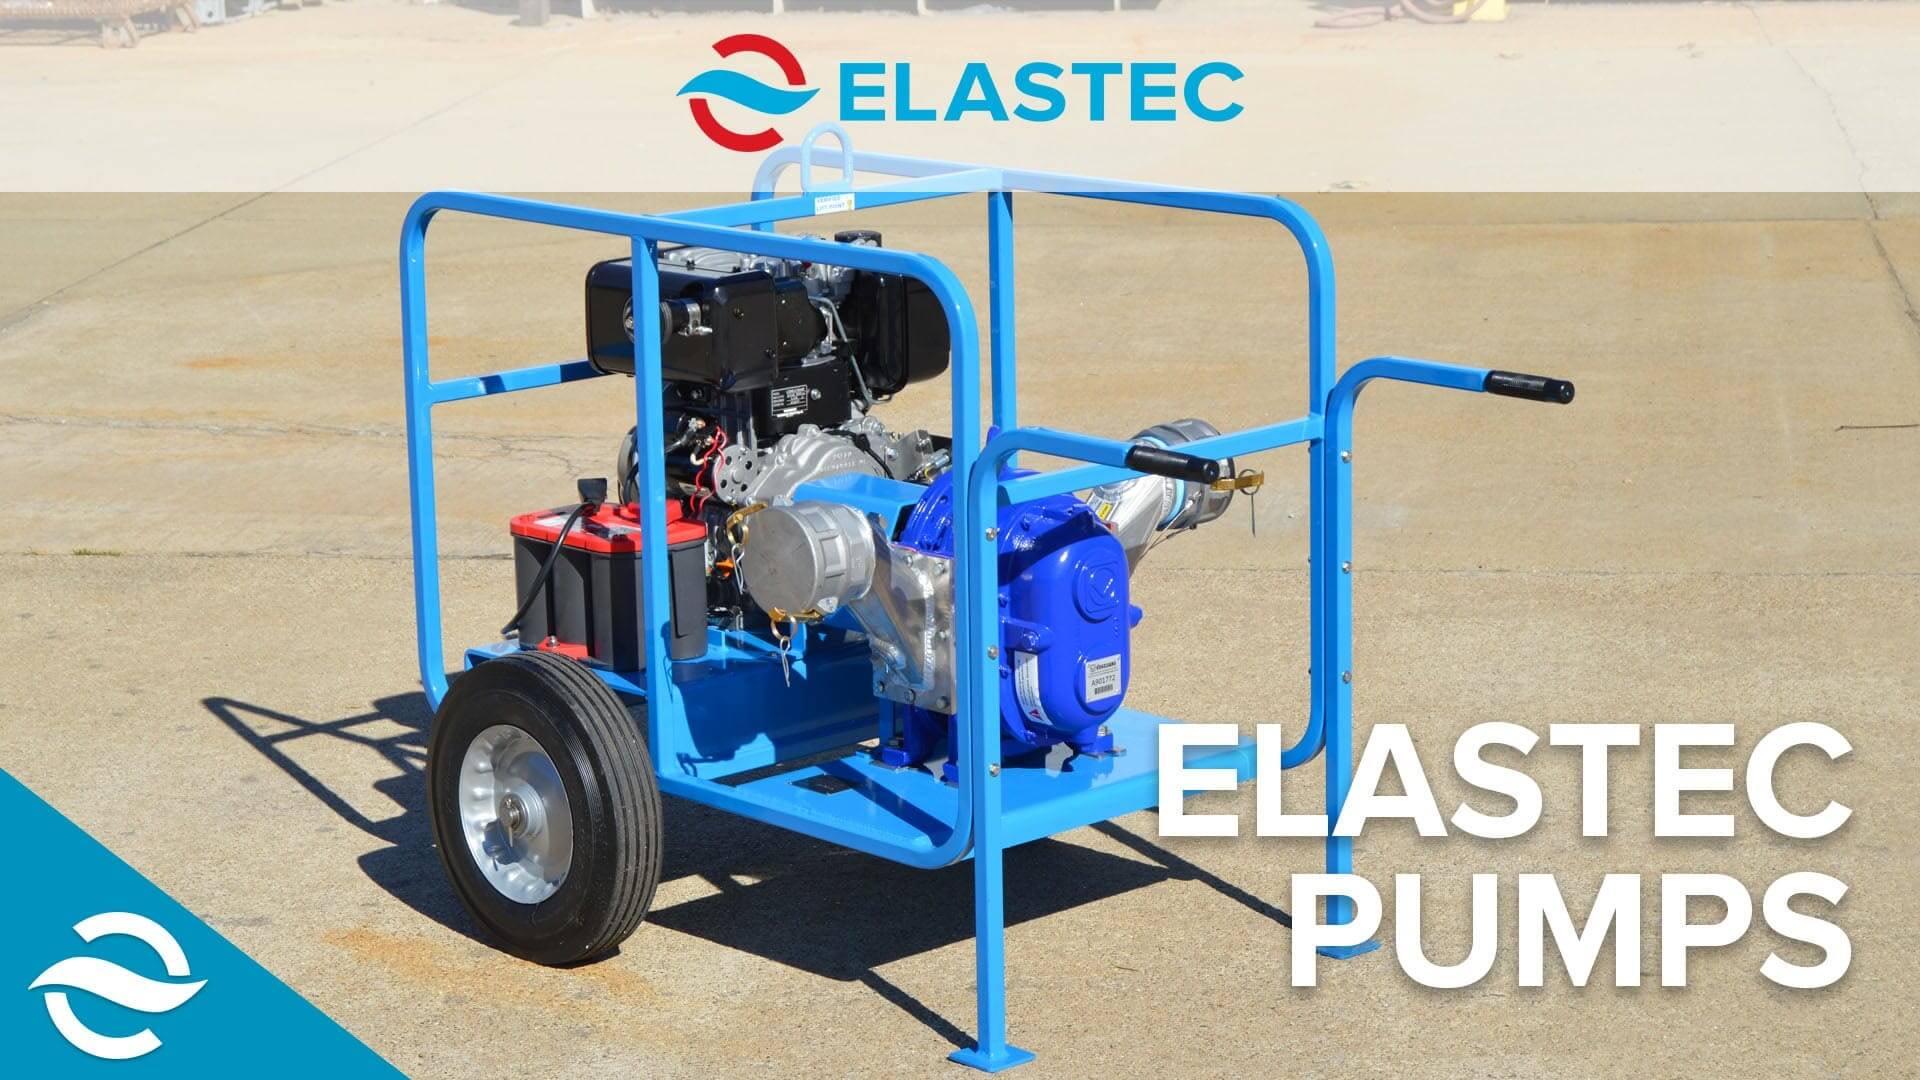 Elastec Pumps